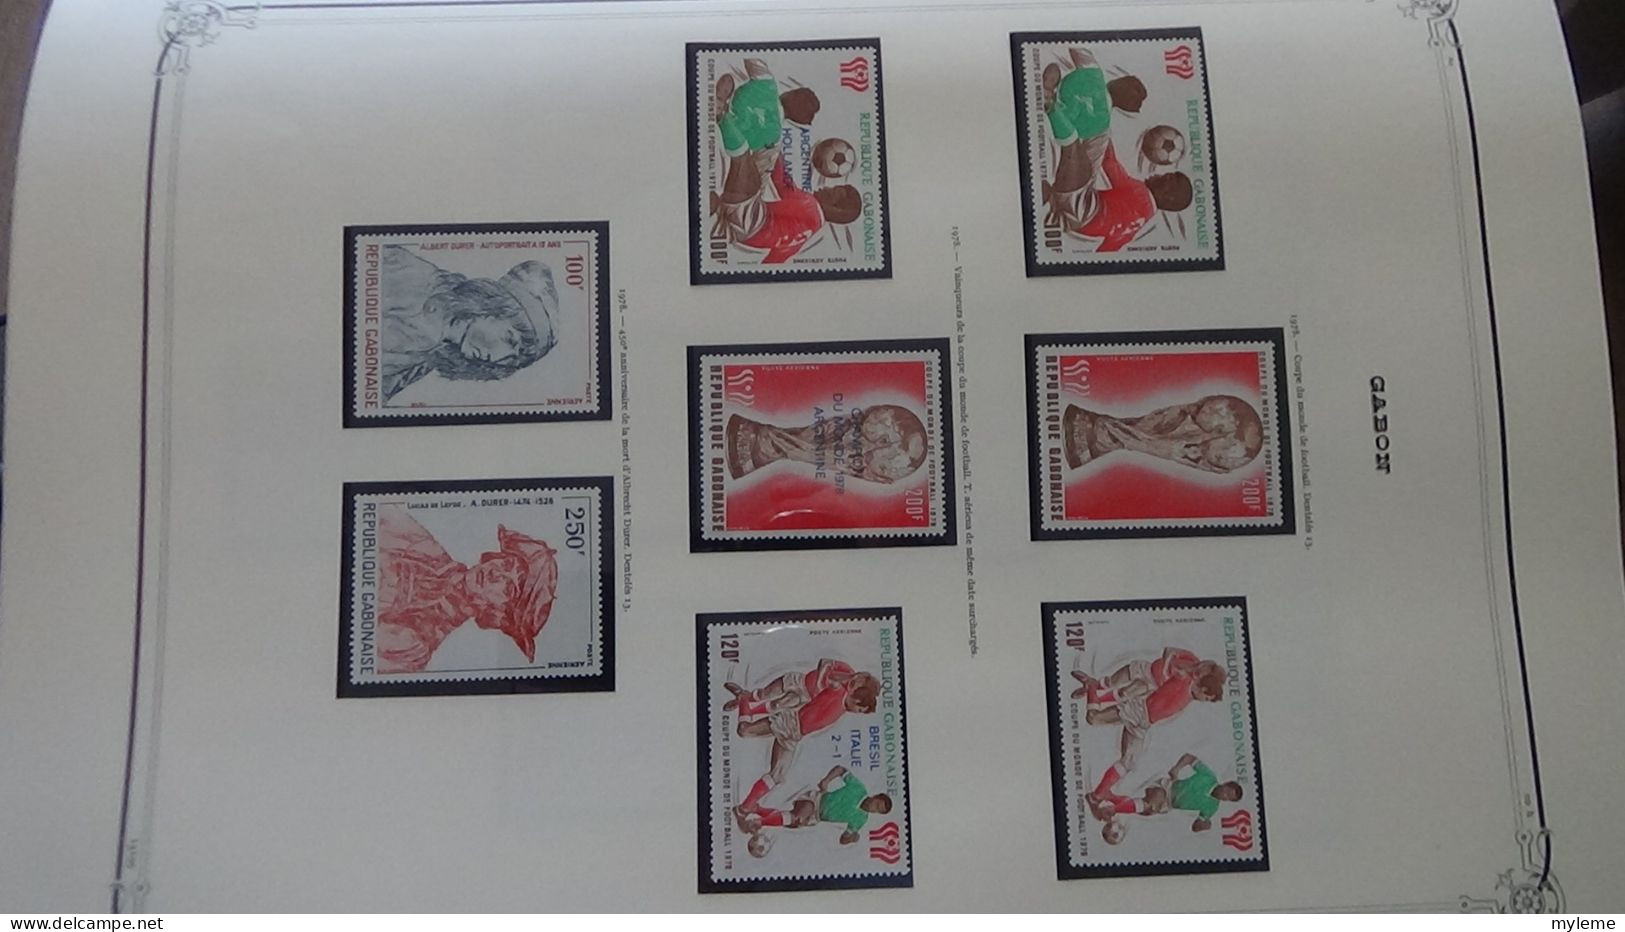 BC101 Collection de timbres et blocs ** du Gabon sur feuille d'album.  A saisir !!!